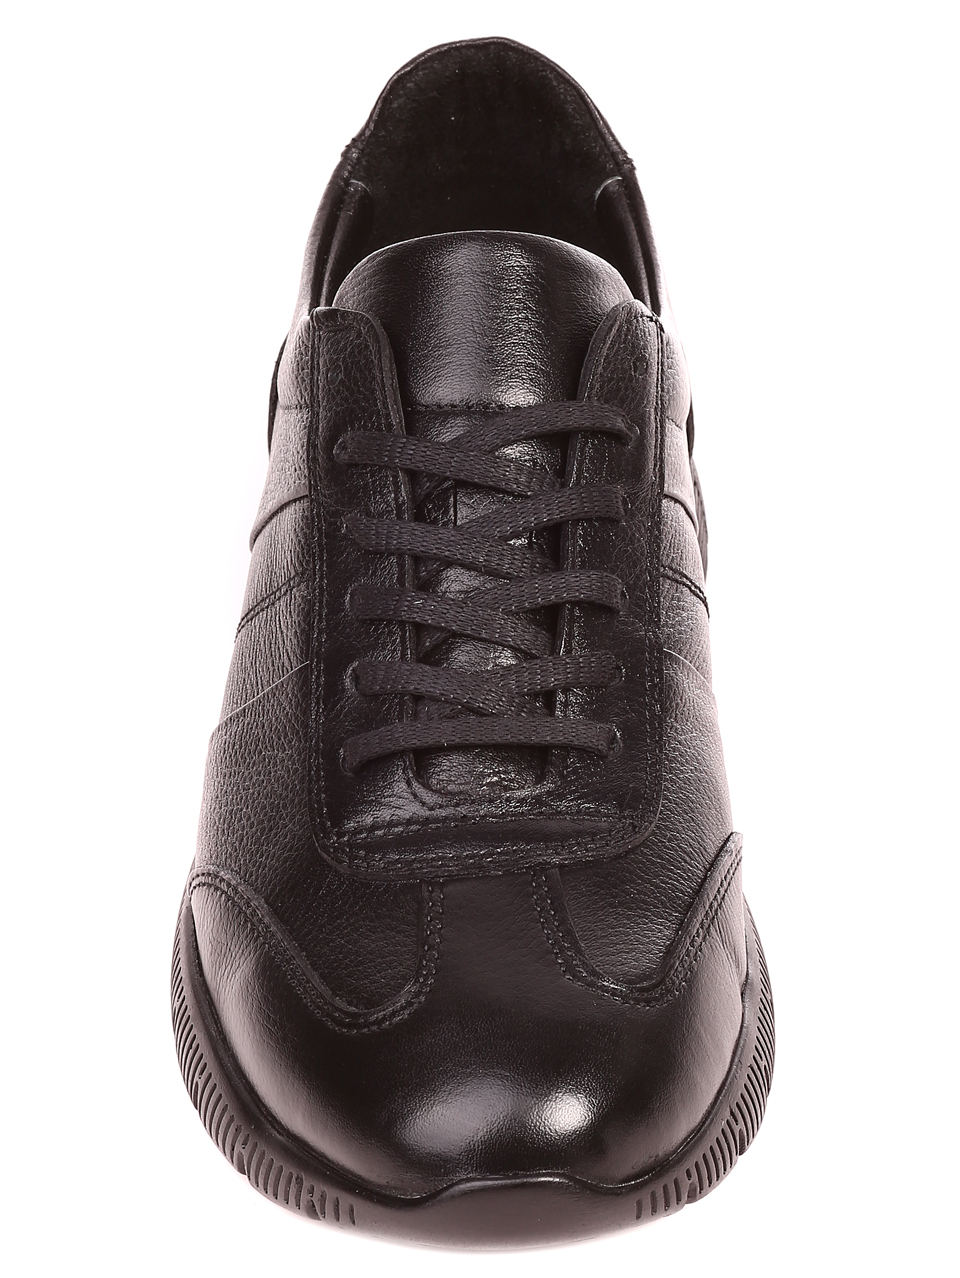 Ежедневни мъжки обувки от естествена кожа 7AT-21844 black